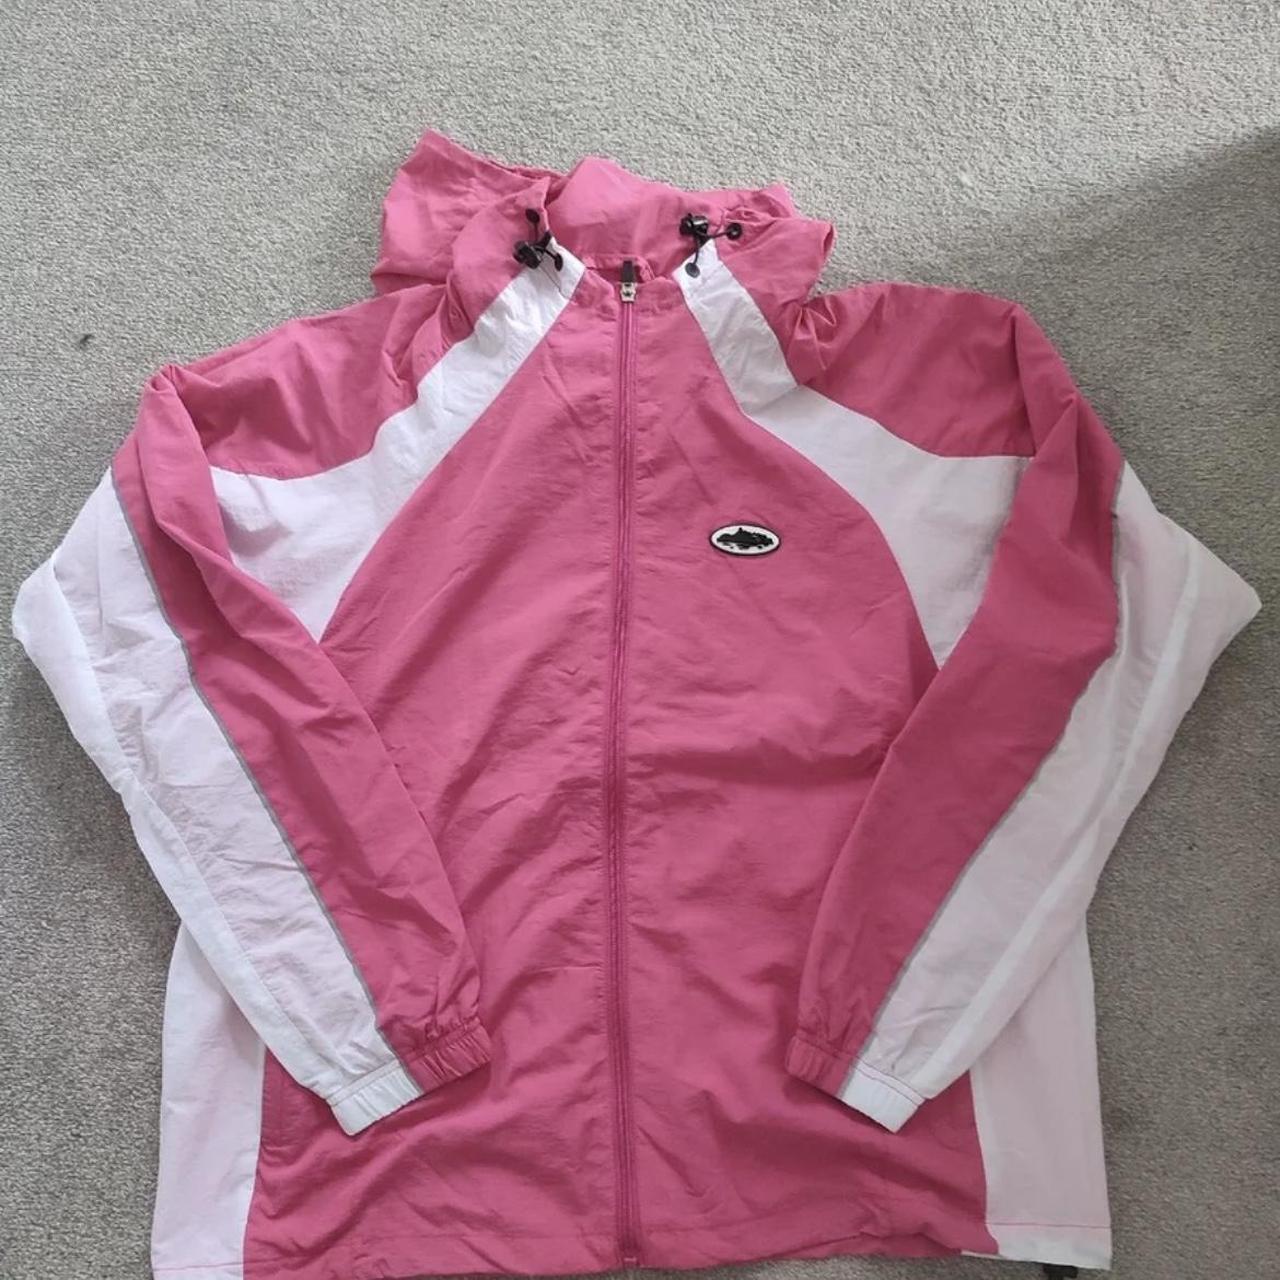 Rare Pink corteiz jacket. Brand new! - Depop